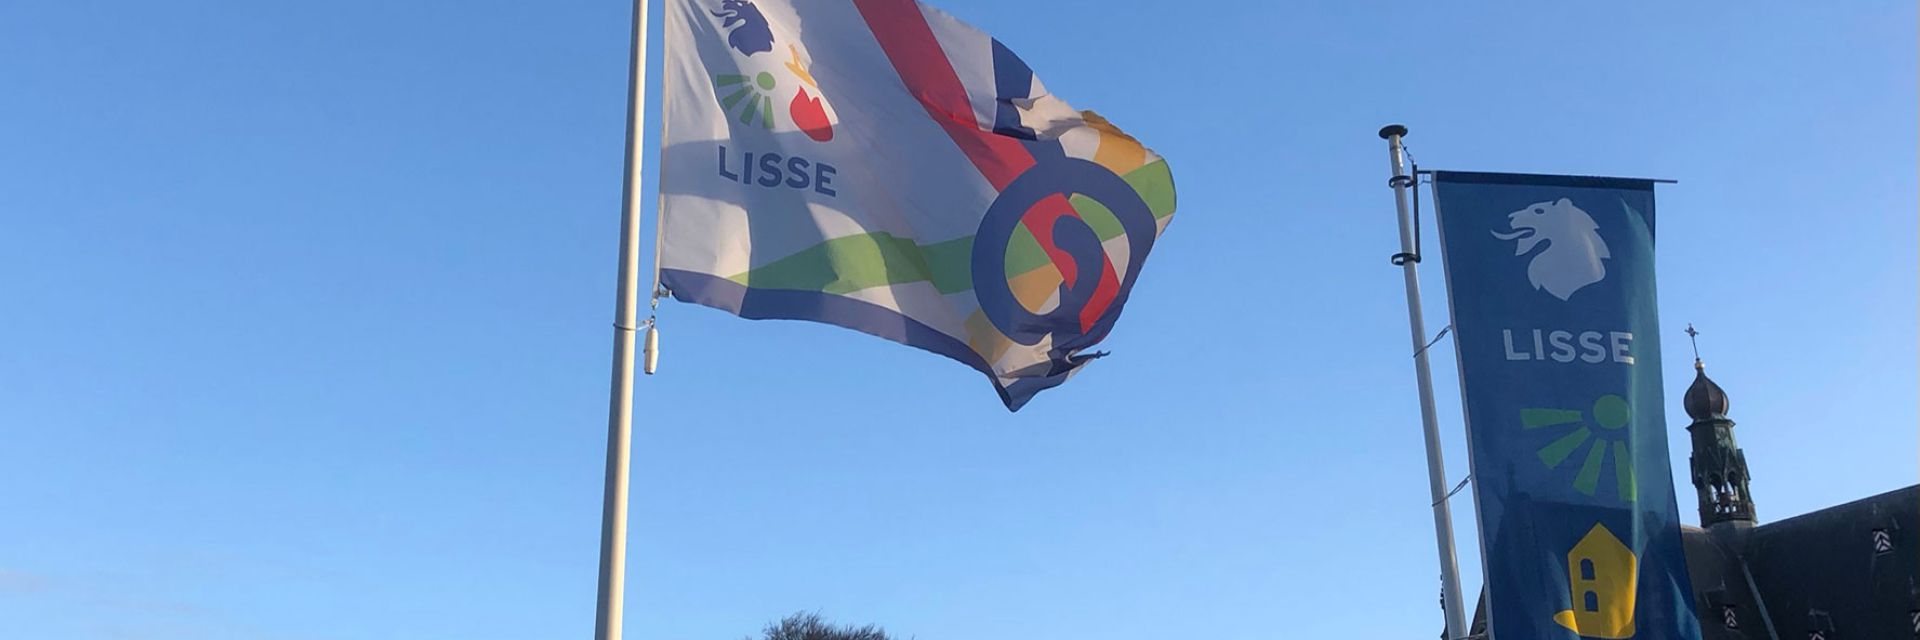 Vlag van de inclusieve samenleving naast de vlag van Lisse